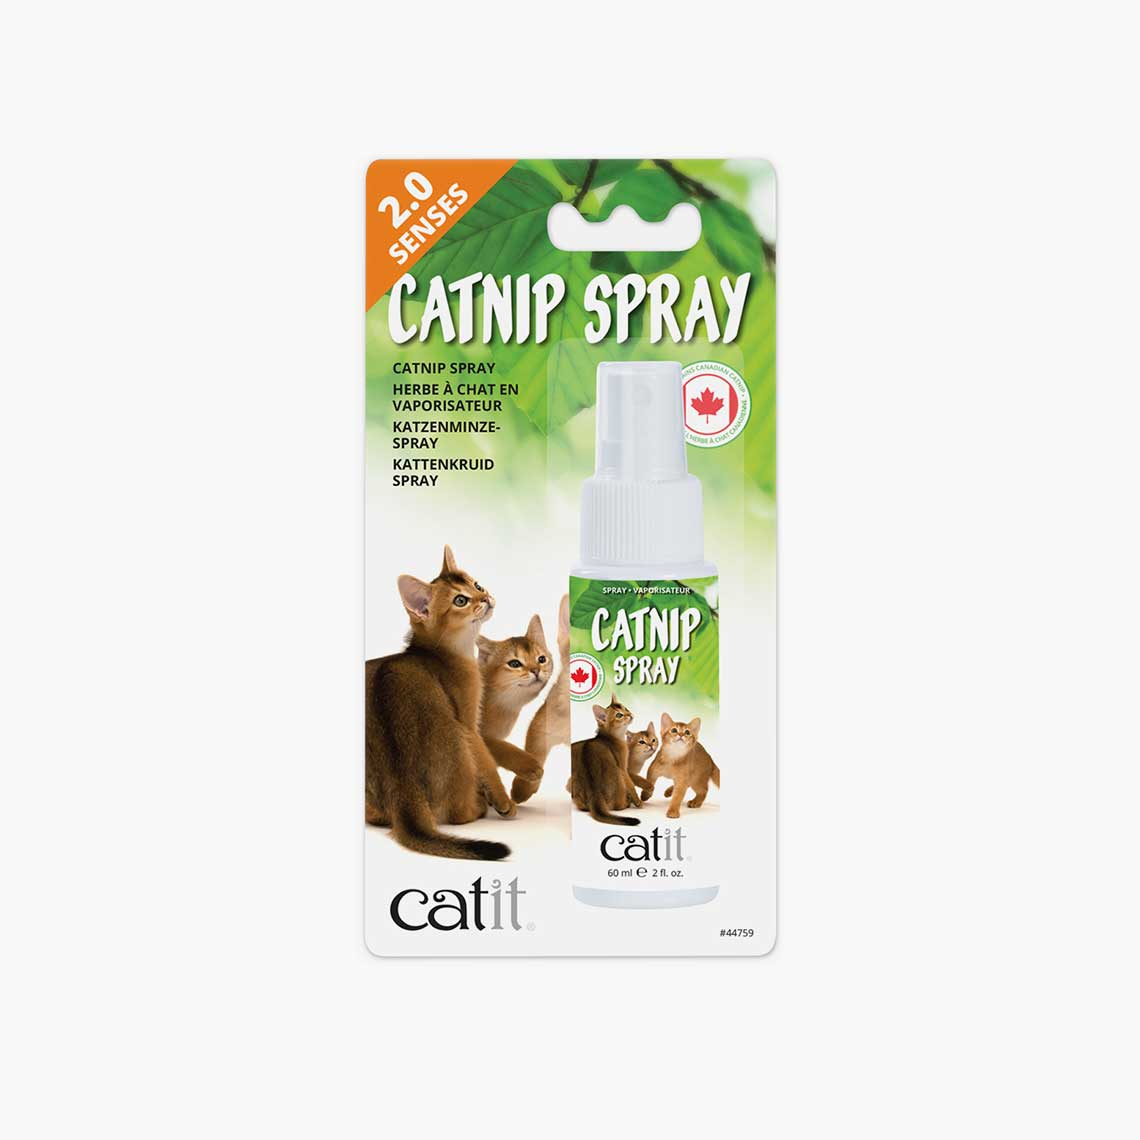 Catit Catnit Spray Vaporisateur d'herbe à chat